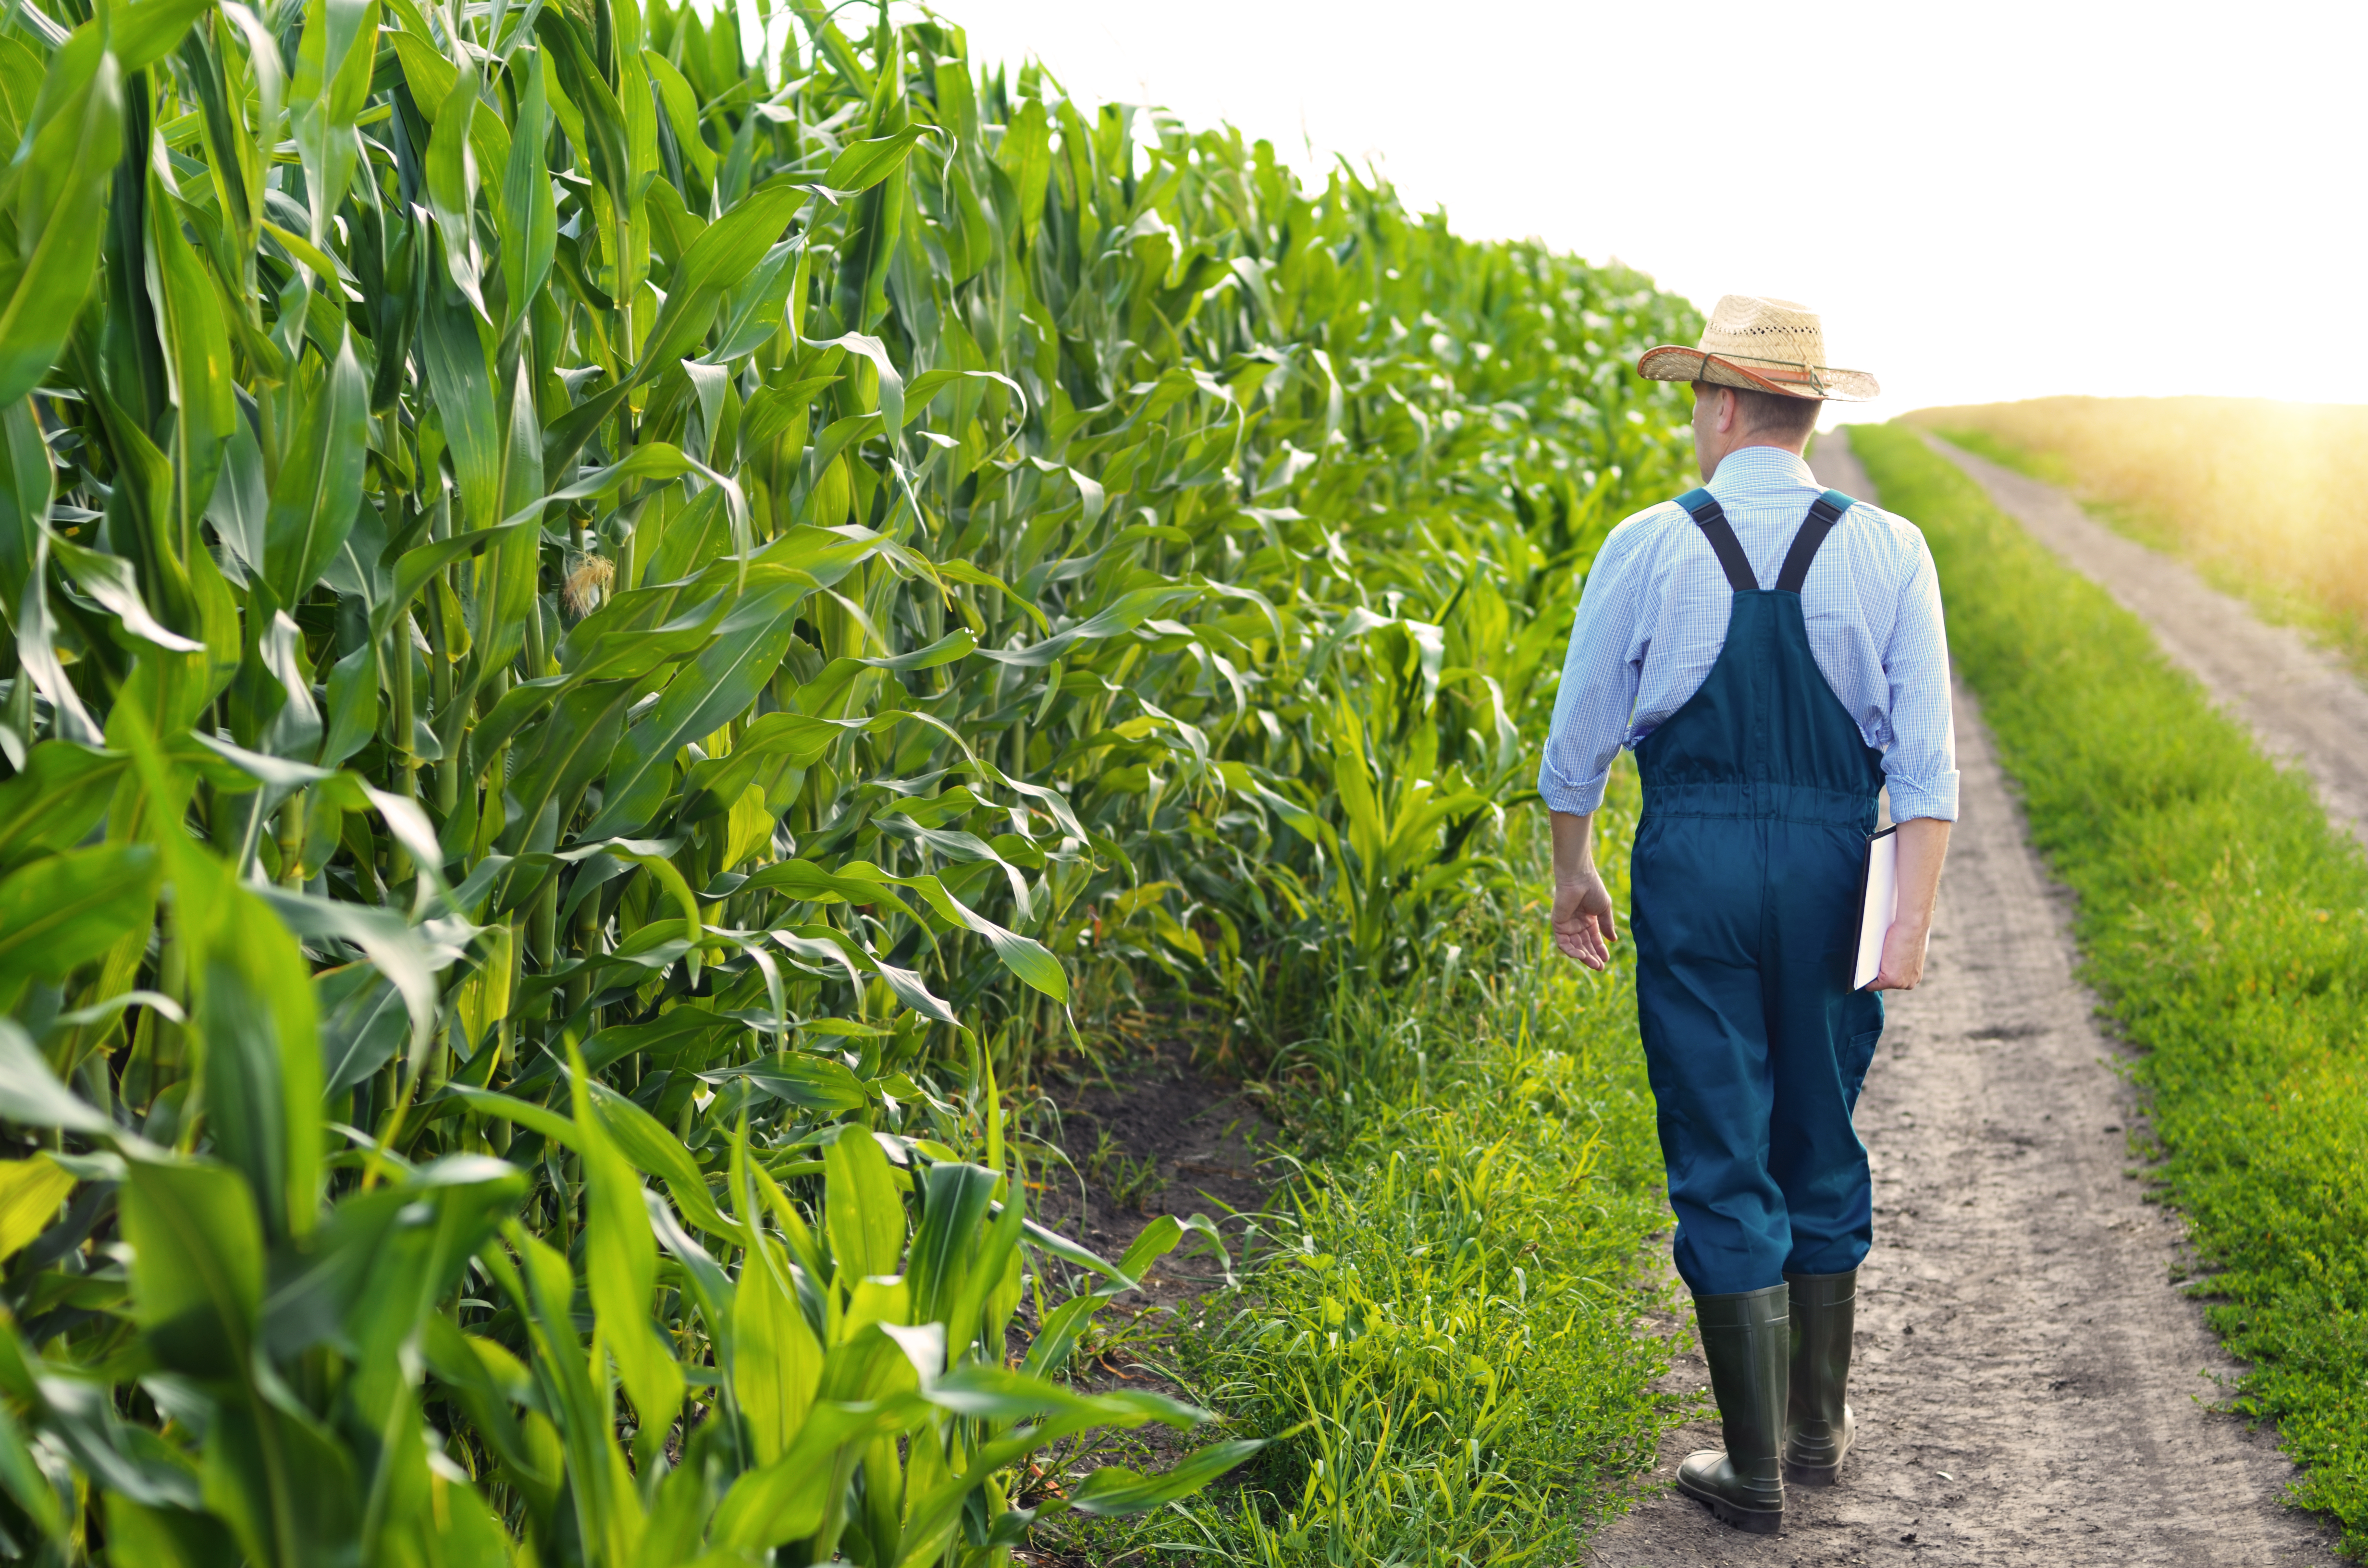 Farmer walking in a cornfield